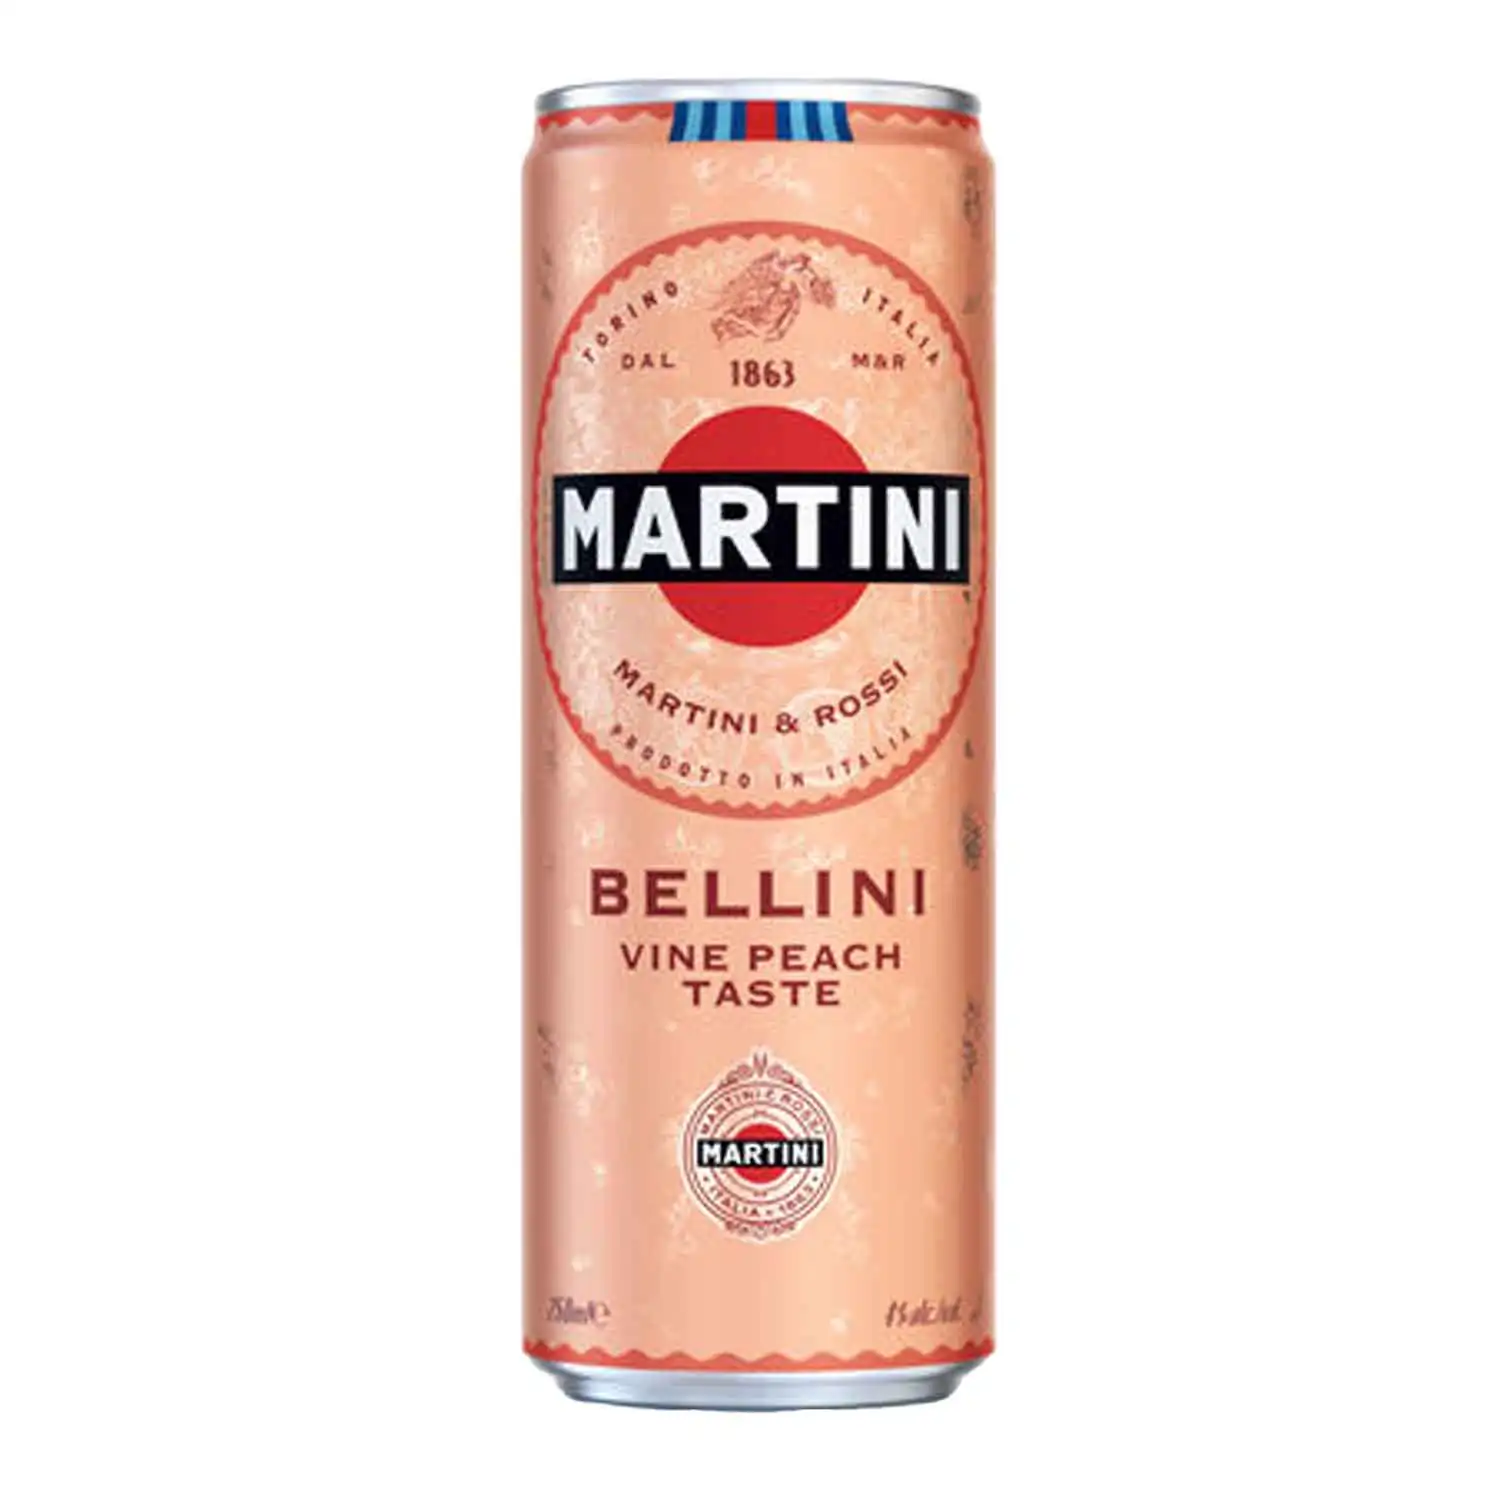 Martini bellini 25cl Alc 4% - Buy at Real Tobacco